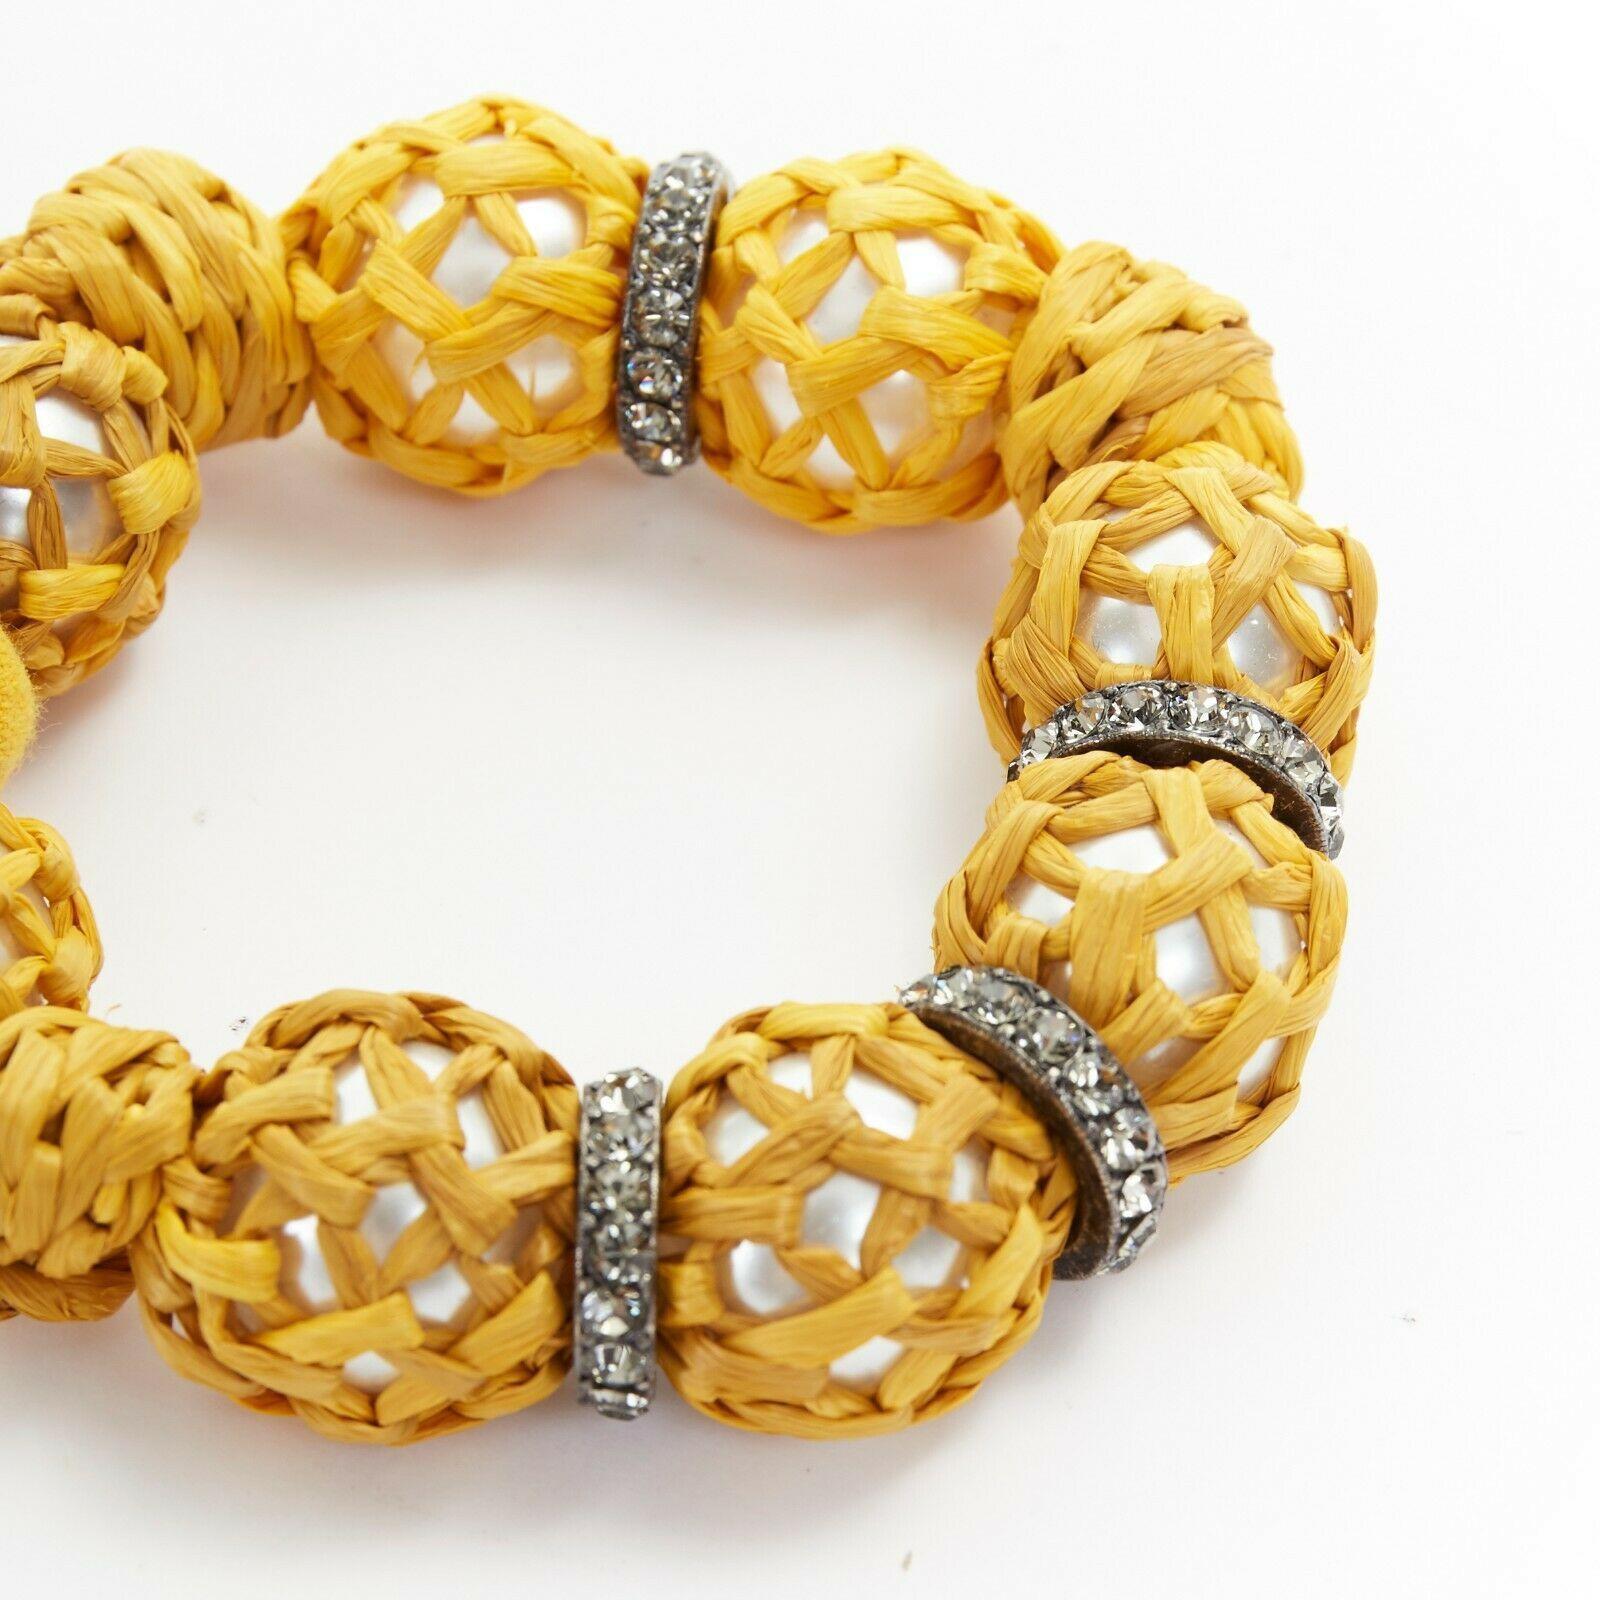 Women's new LANVIN ALBER ELBAZ faux pearl yellow raffia wrapped crystal hook bracelet